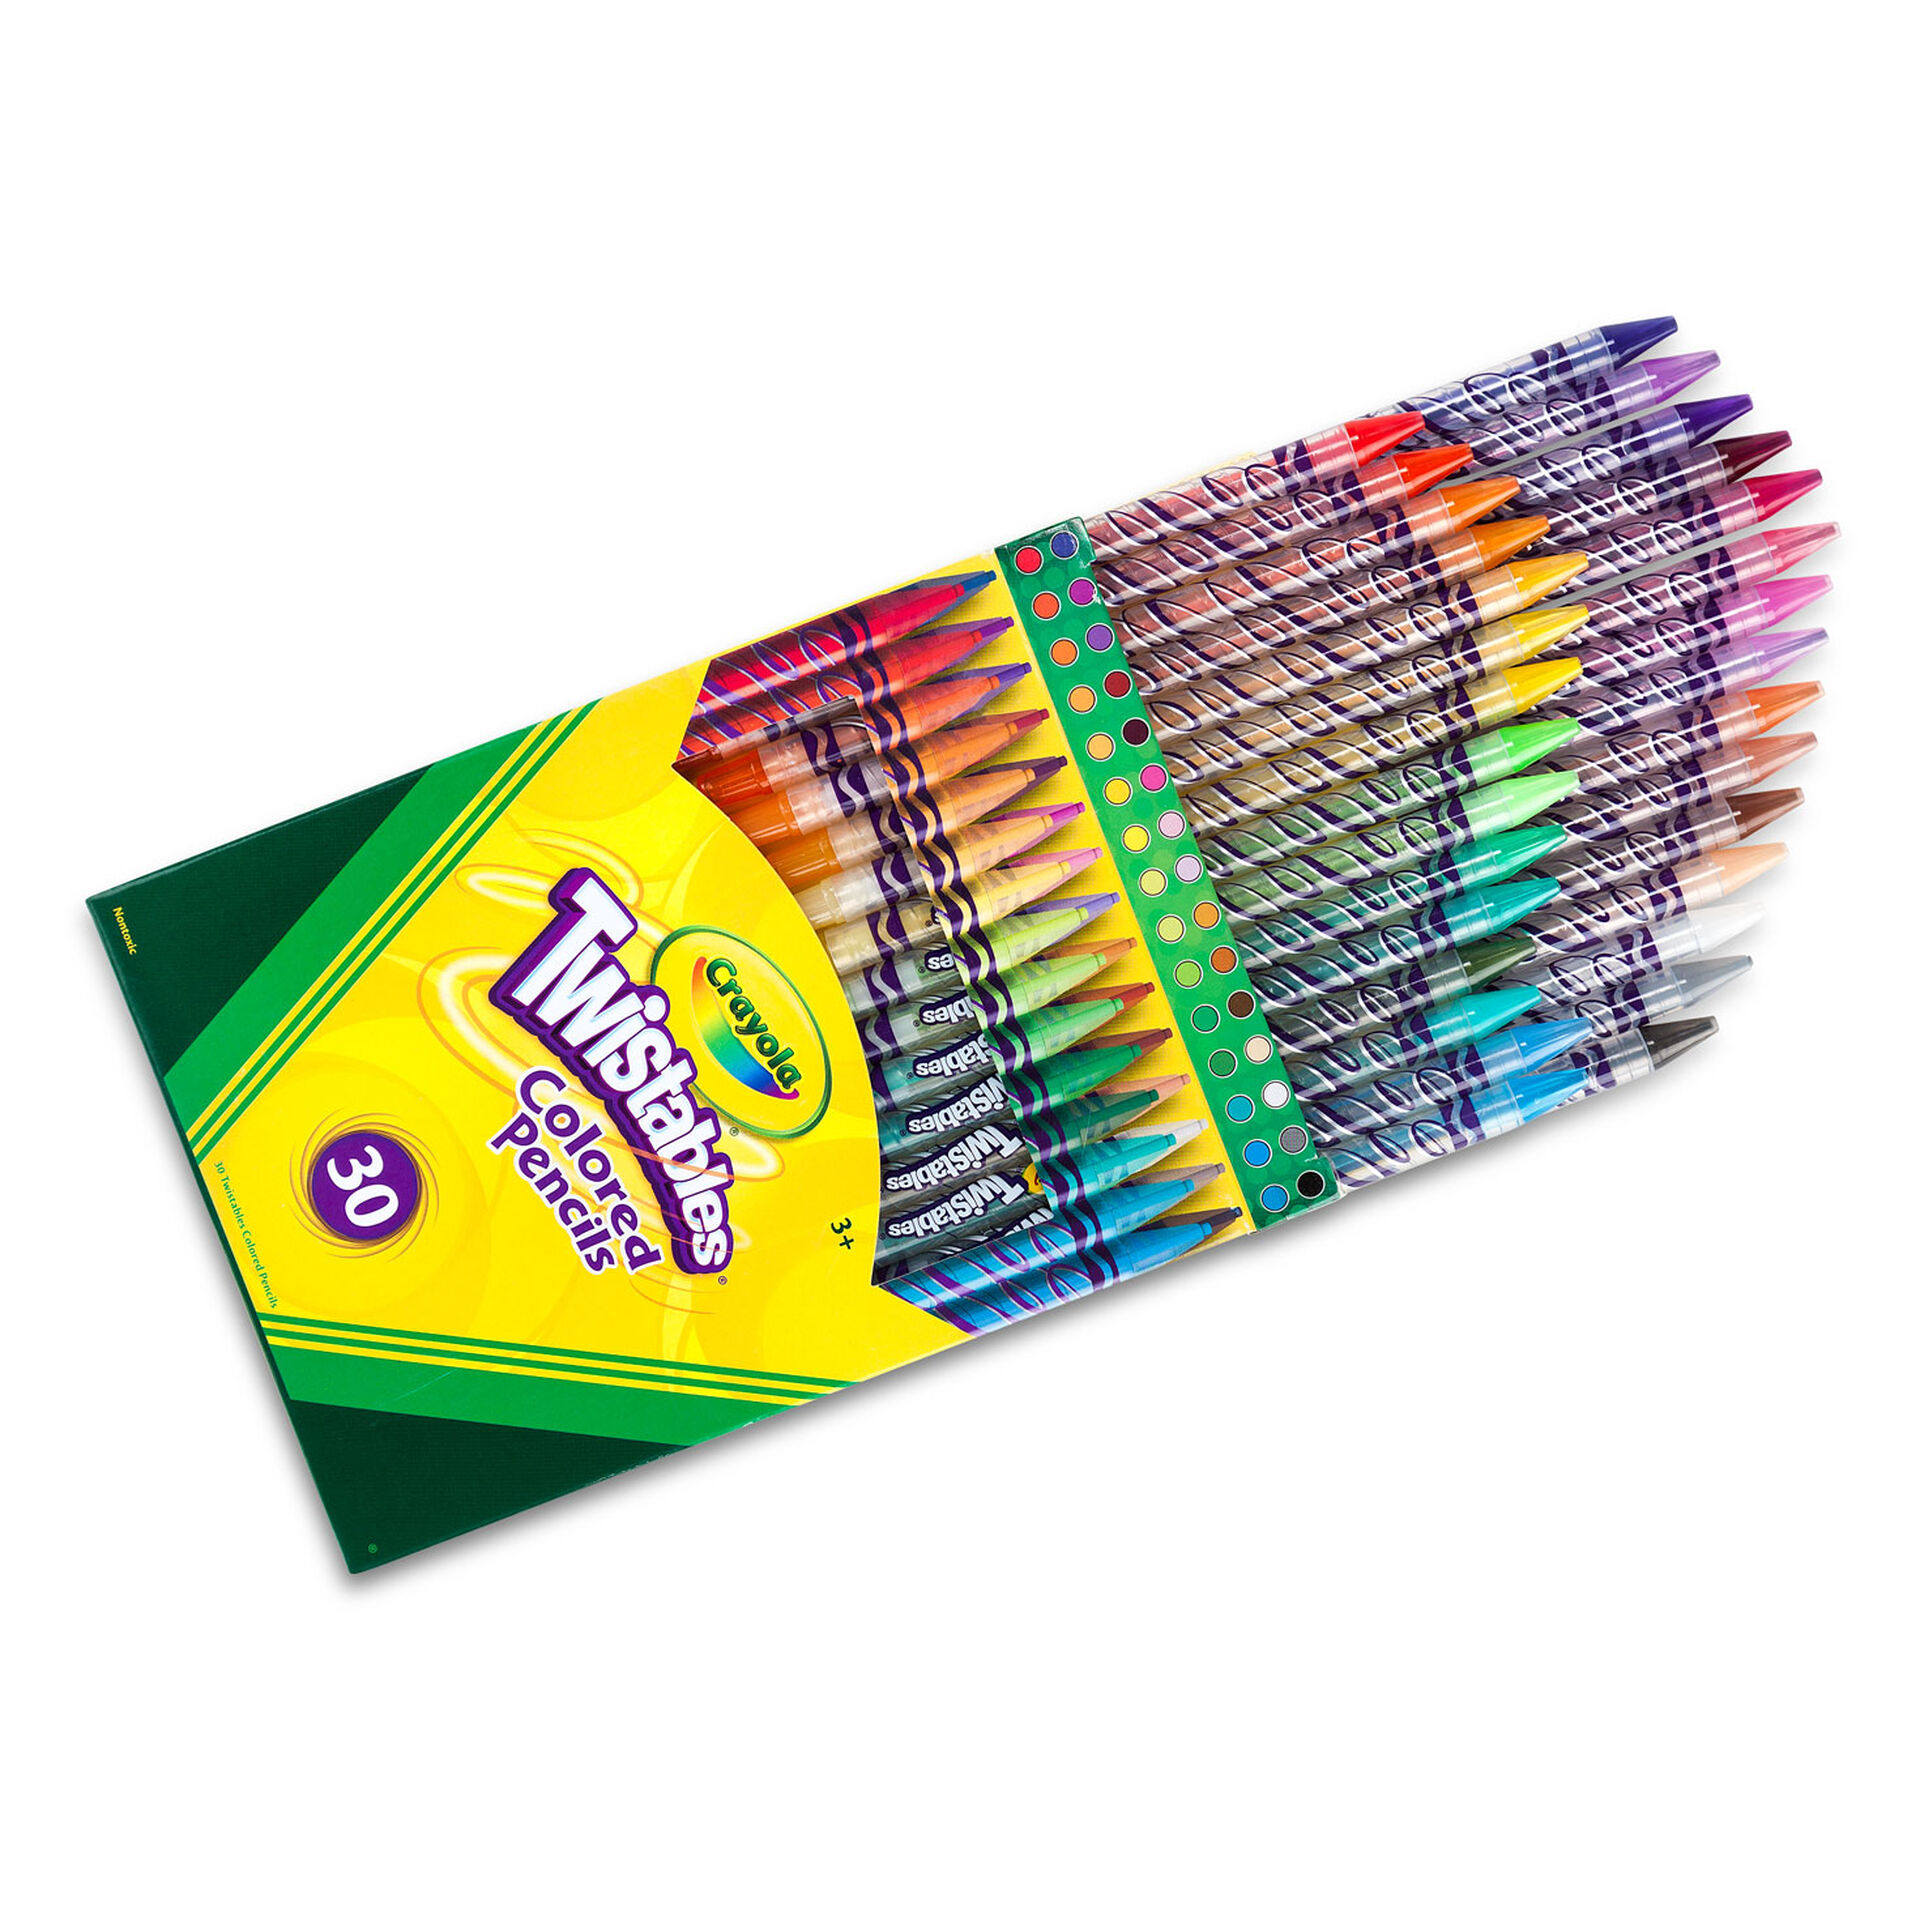 Crayola Twistables Colored Pencils, 30-Count - Arts & Crafts - Hallmark